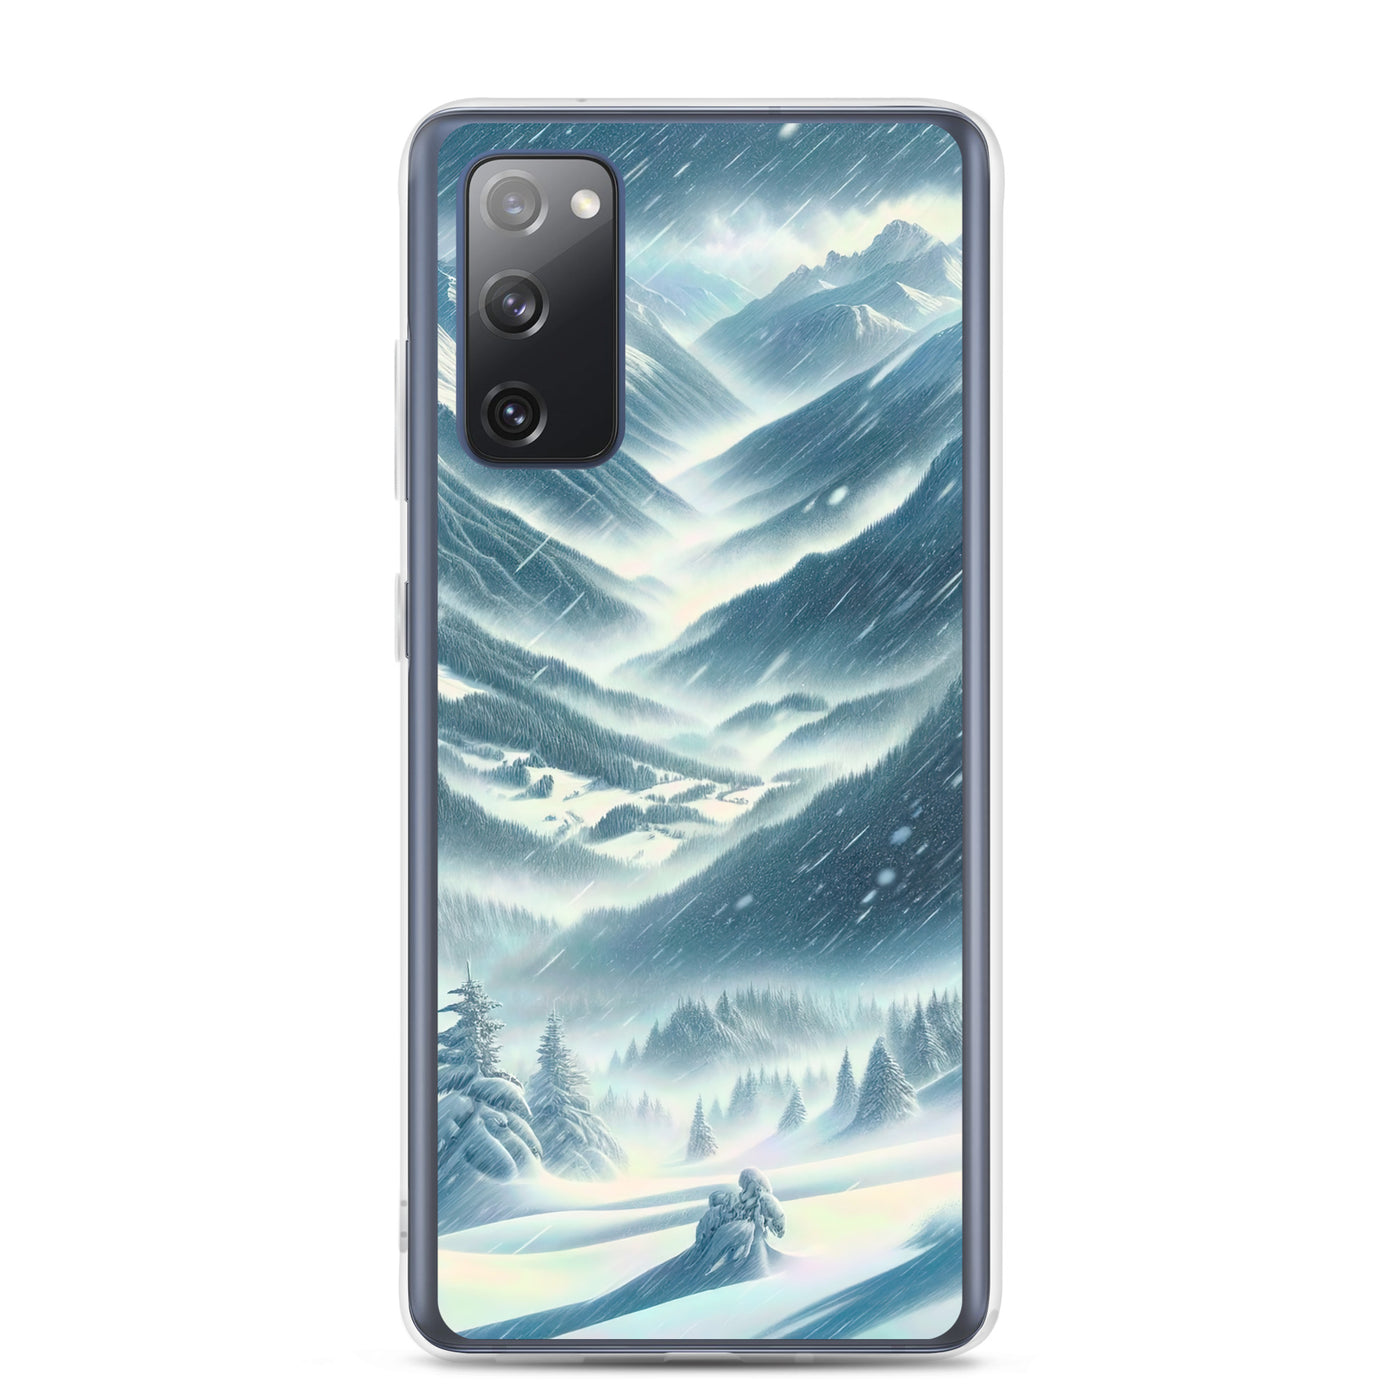 Alpine Wildnis im Wintersturm mit Skifahrer, verschneite Landschaft - Samsung Schutzhülle (durchsichtig) klettern ski xxx yyy zzz Samsung Galaxy S20 FE